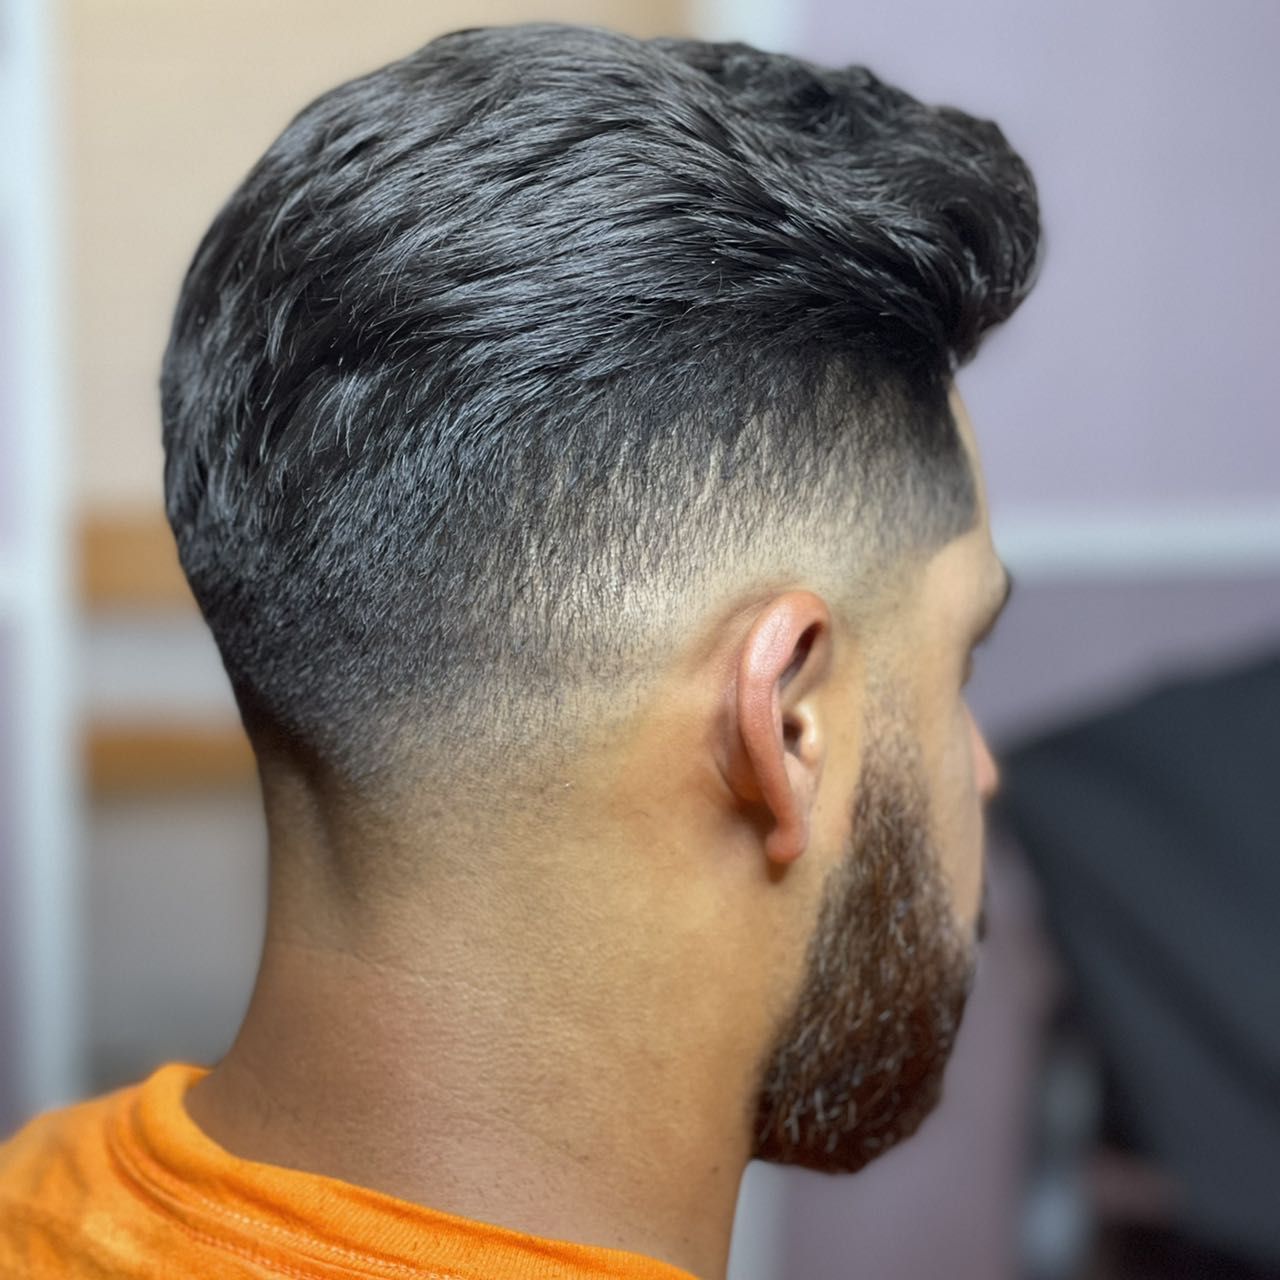 Detailed Haircut• 𝑻𝒂𝒑𝒆𝒓𝒔, 𝑺𝒌𝒊𝒏 𝑭𝒂𝒅𝒆𝒔, 𝒐𝒓 𝑺𝒉𝒆𝒂𝒓 𝒄𝒖𝒕 portfolio